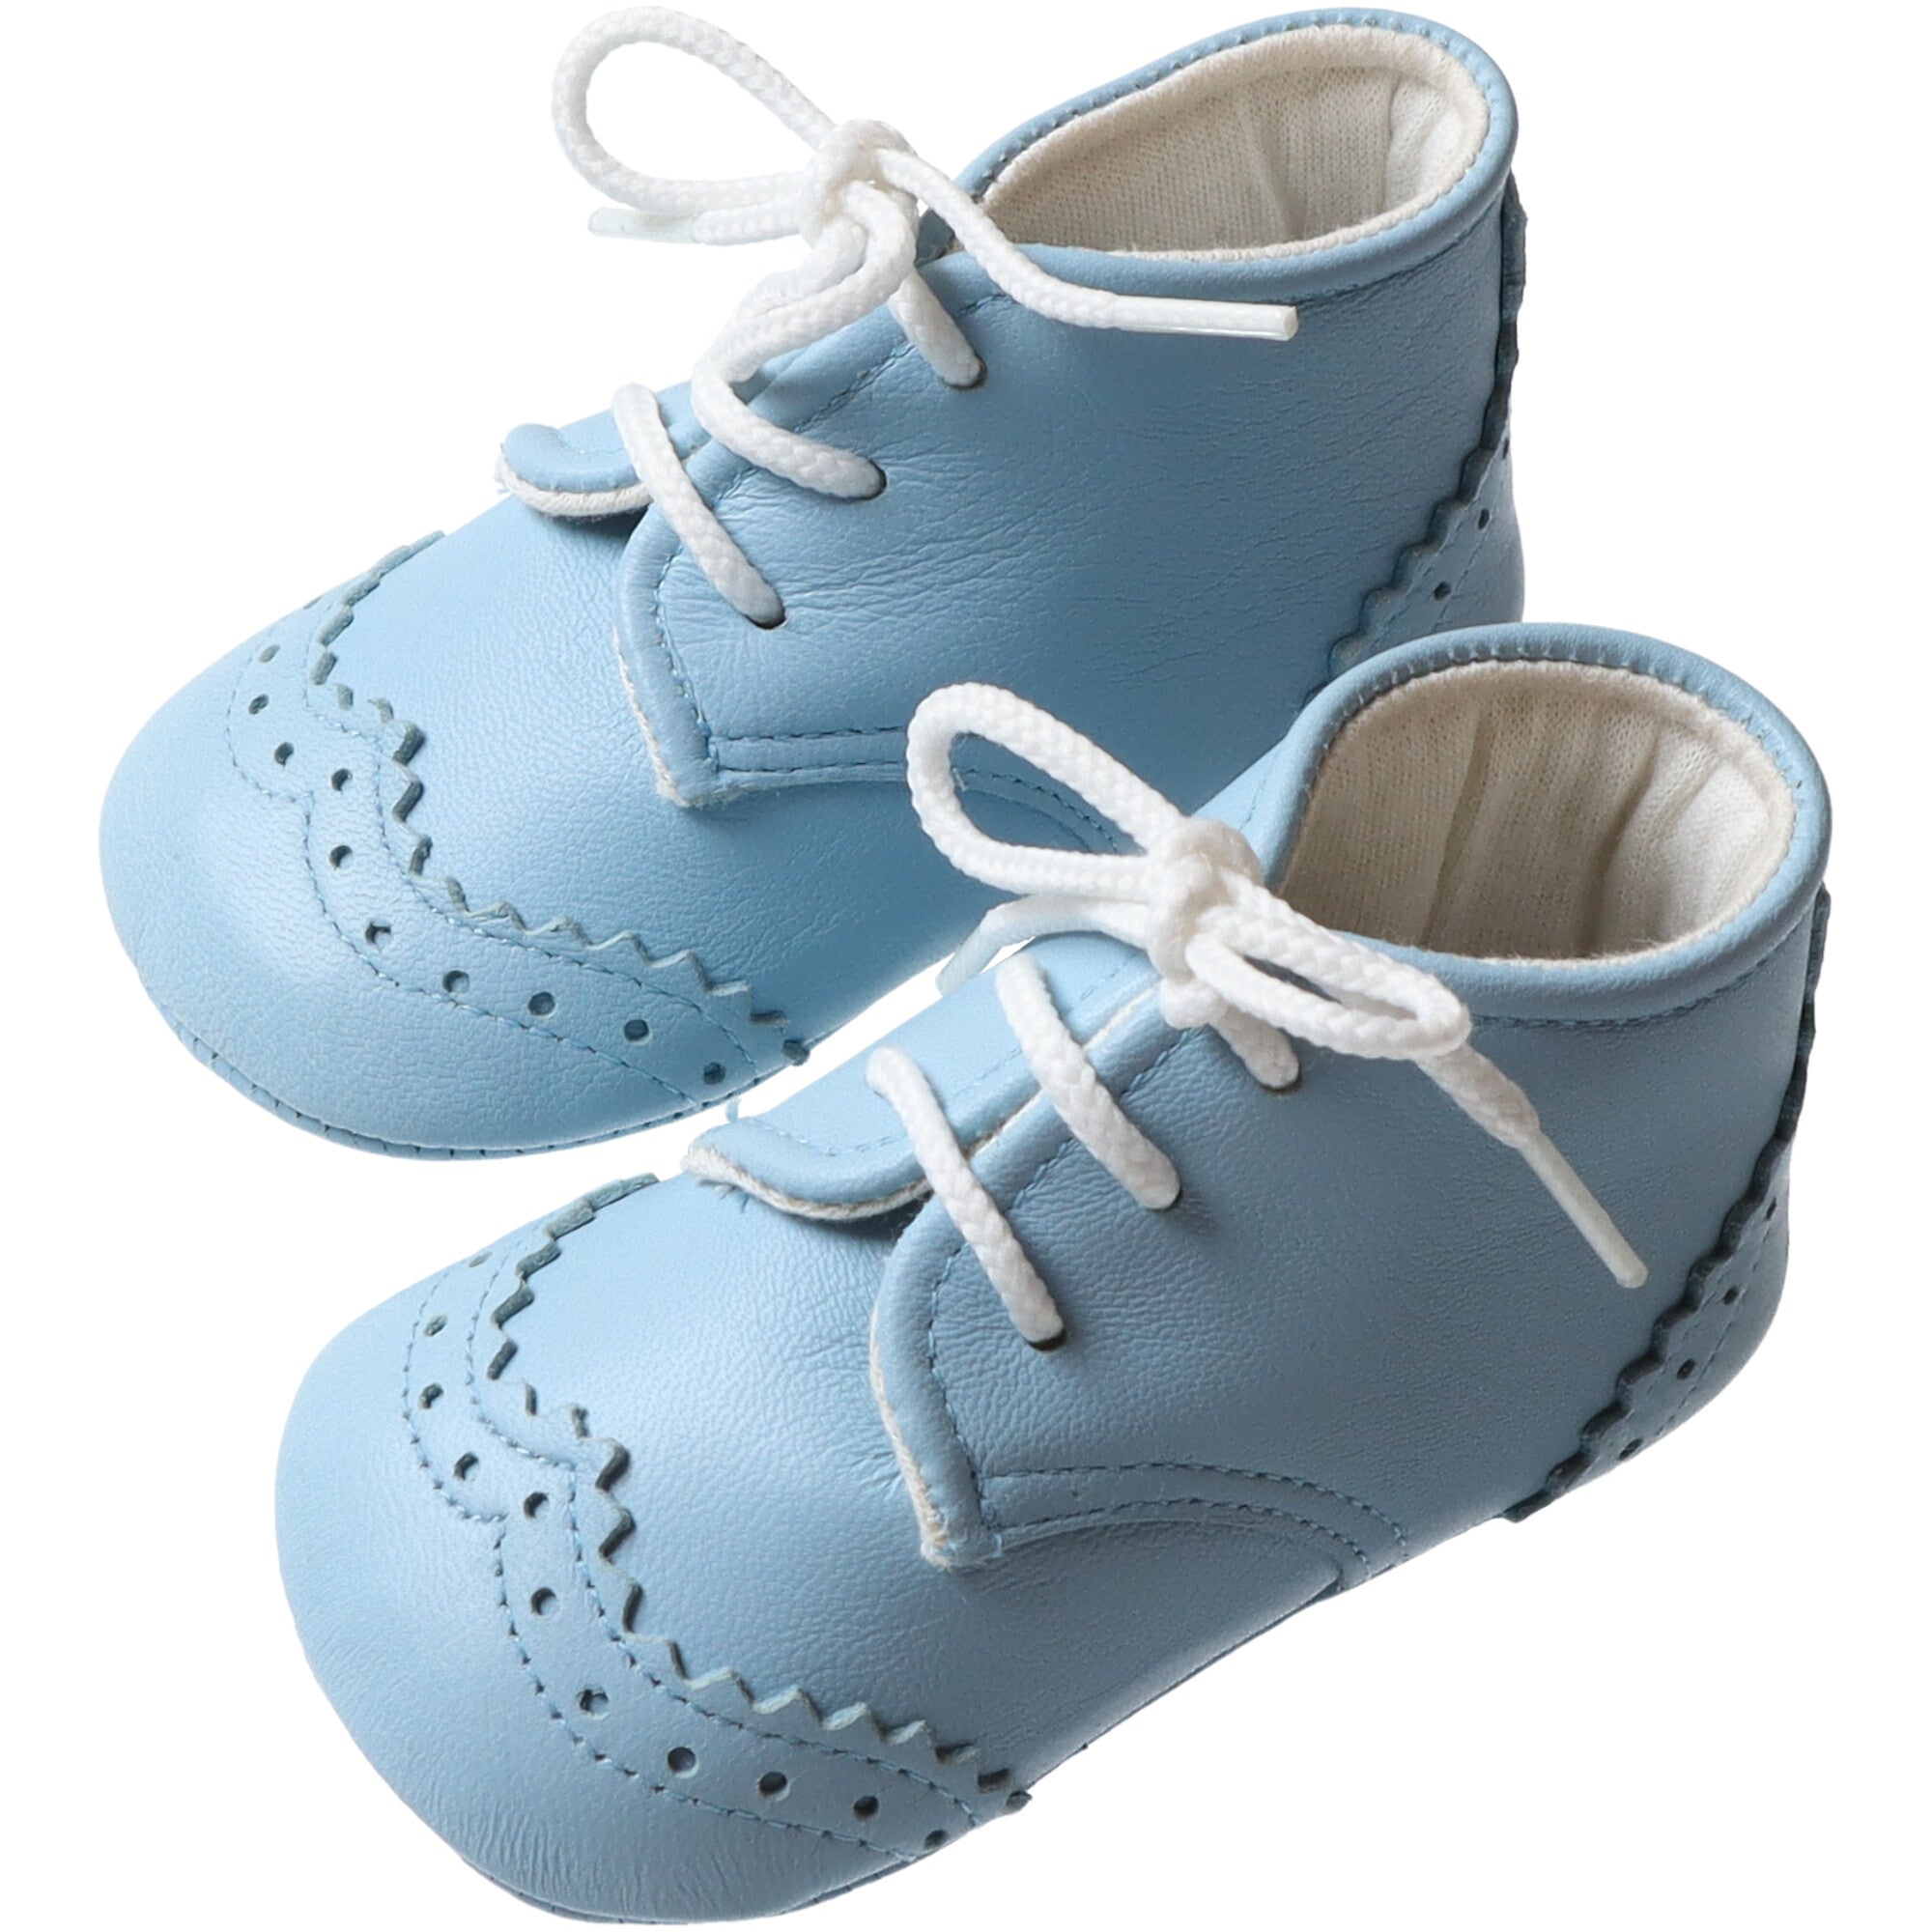 scarpe-in-nappa-colore-azzurro-per-neonati